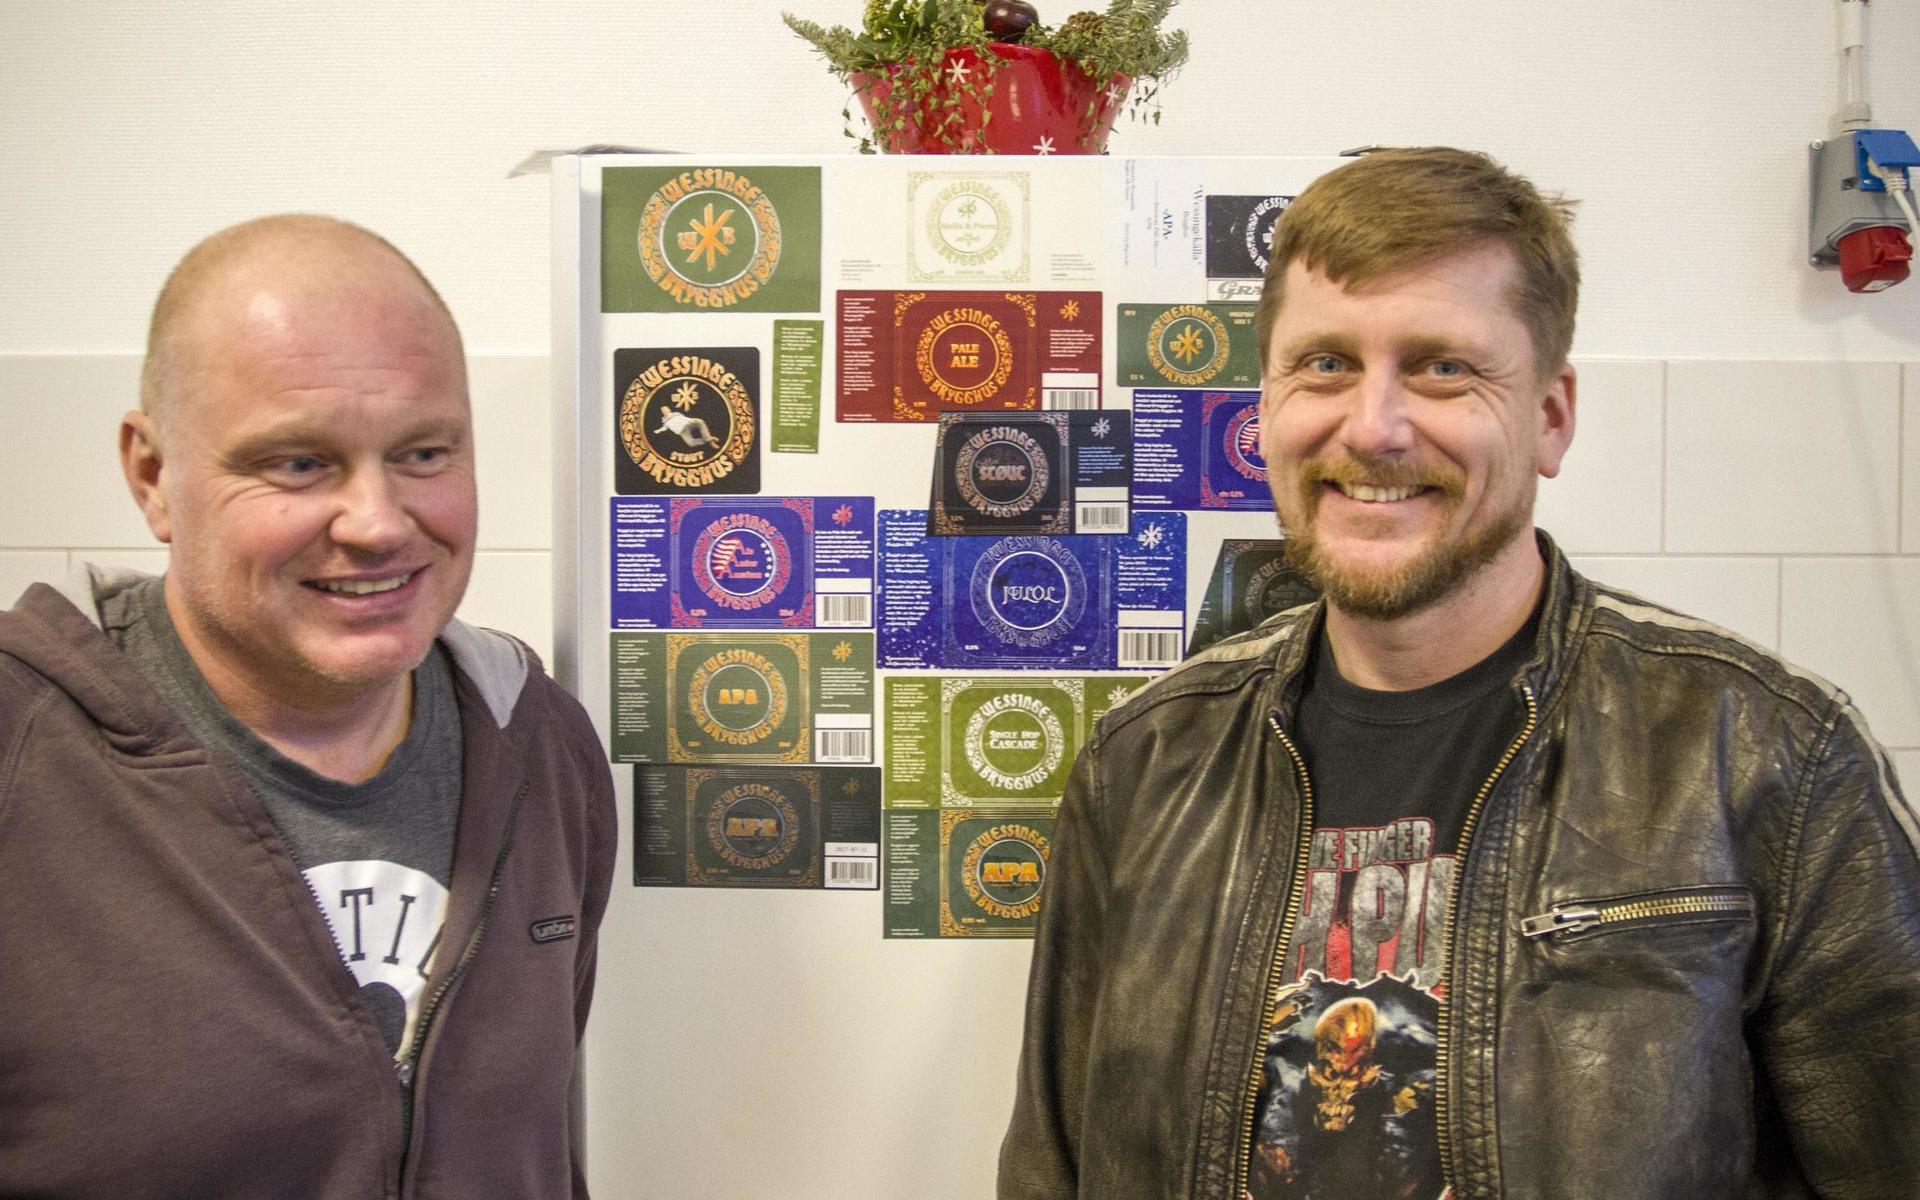 Patrik Eriksson och Niklas Högberg på Wessingekälla brygghus har samarbetat med hårdrocksbandet Bonafide för att skapa gruppens egen öl.